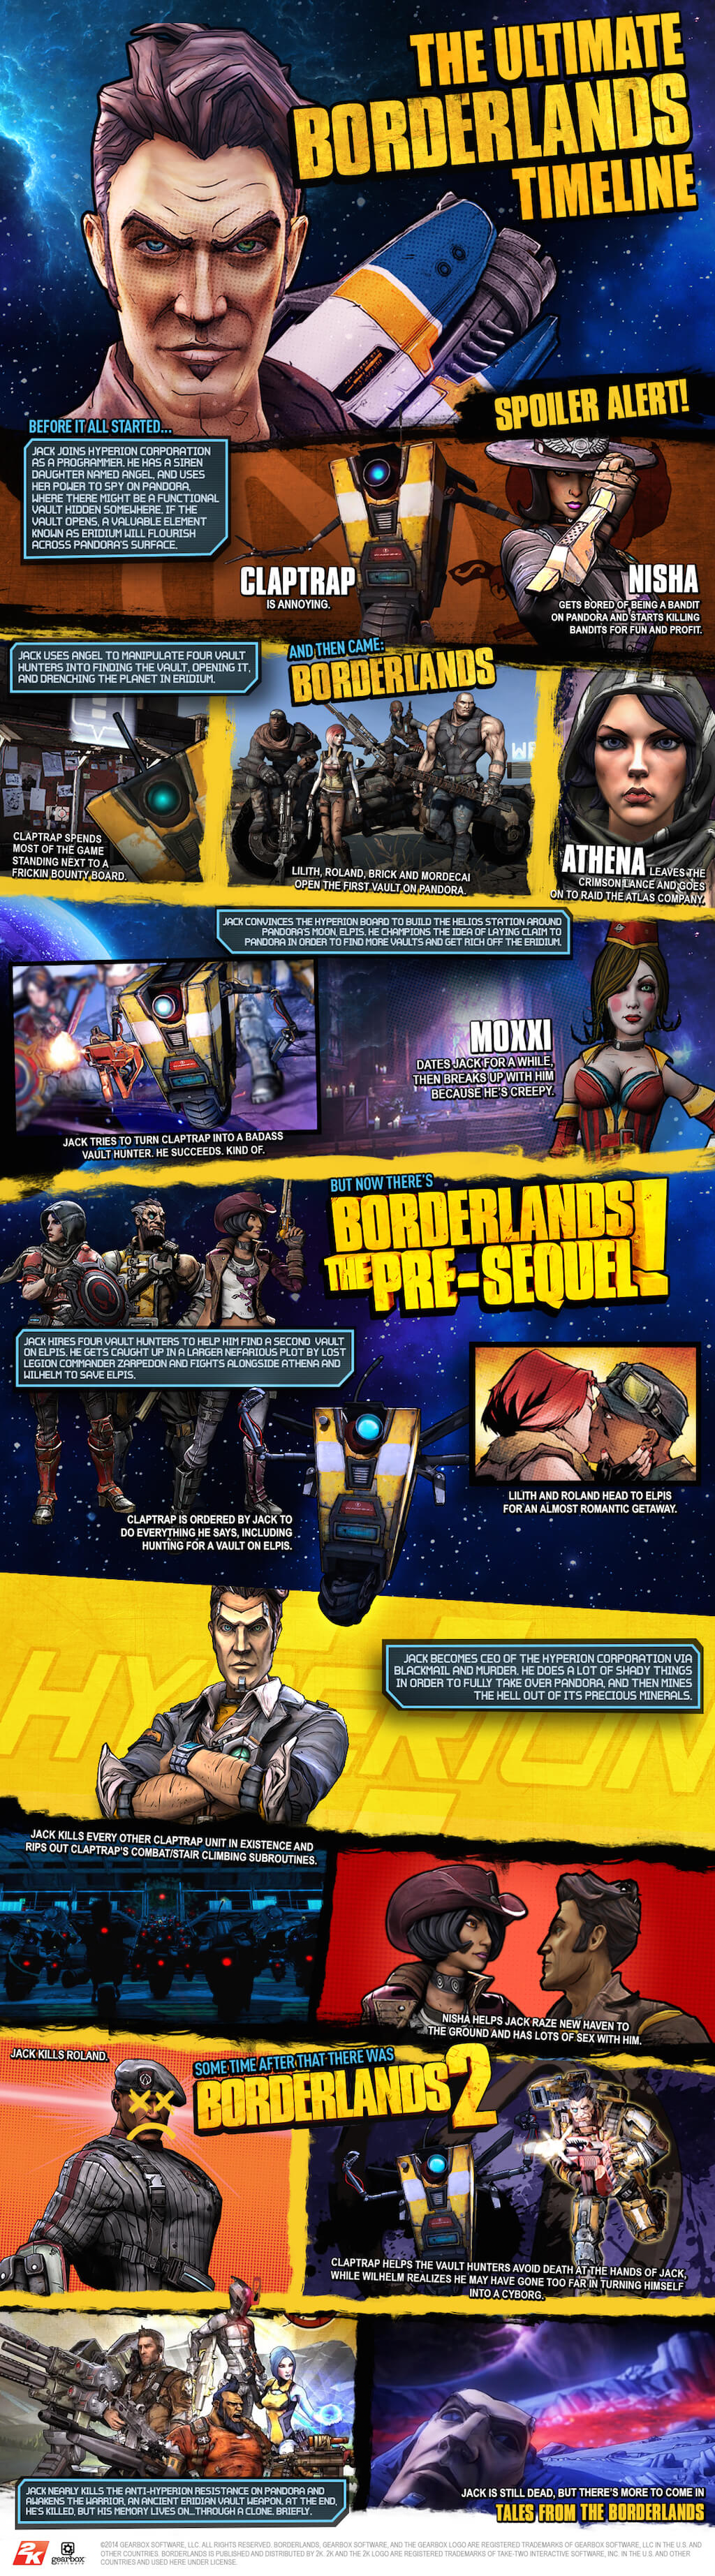 Borderlands-Series-Timeline.jpg